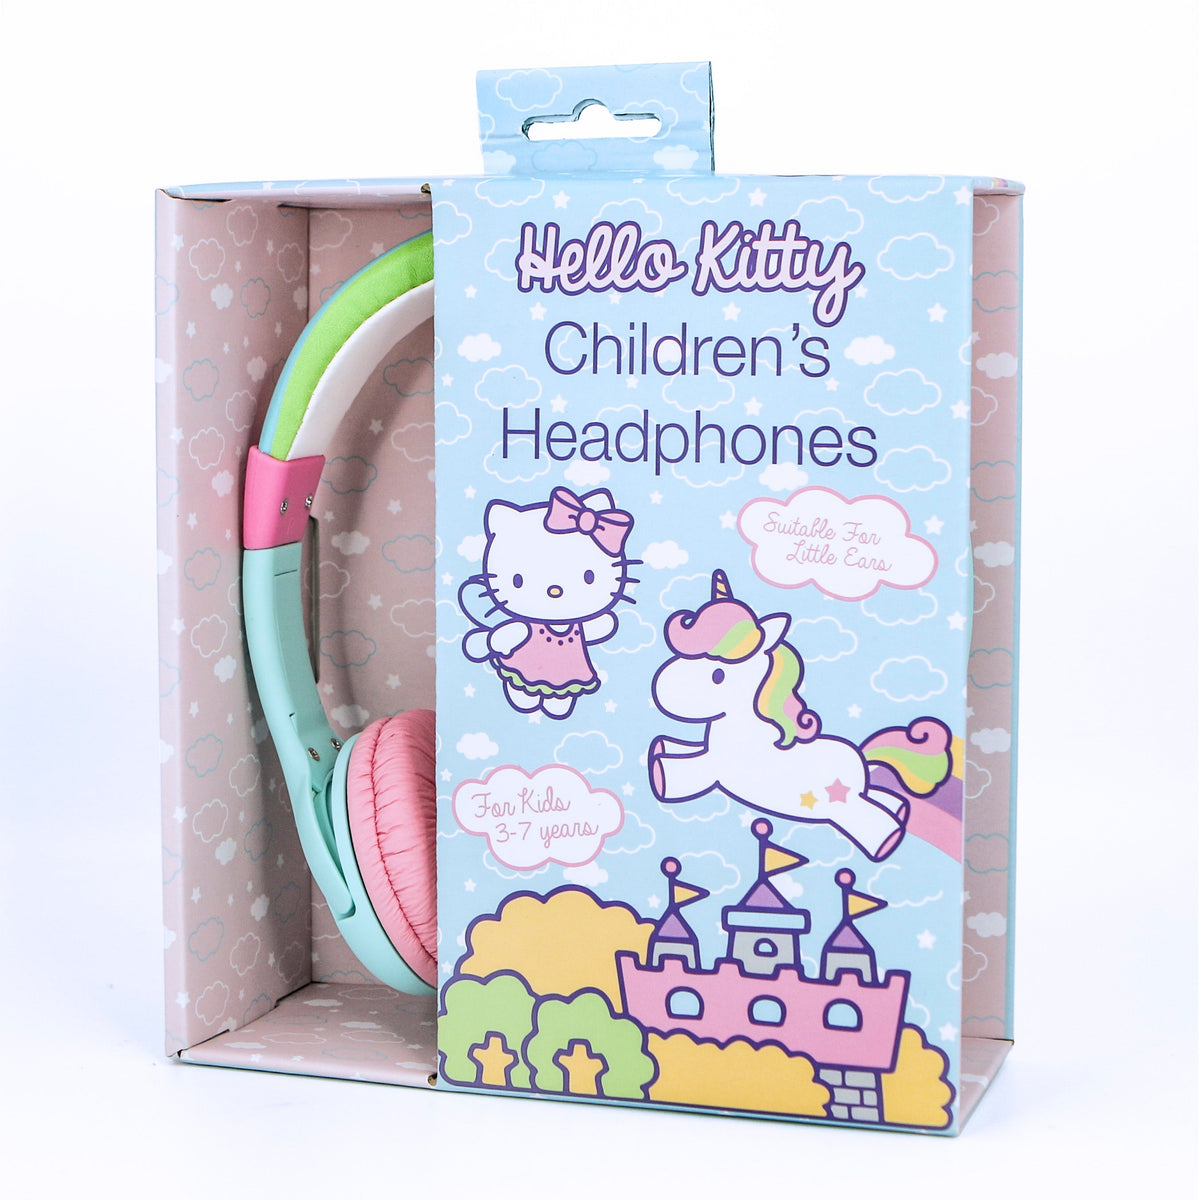 [OPEN BOX] OTL On-Ear Junior Headphone - Hello Kitty Unicorn